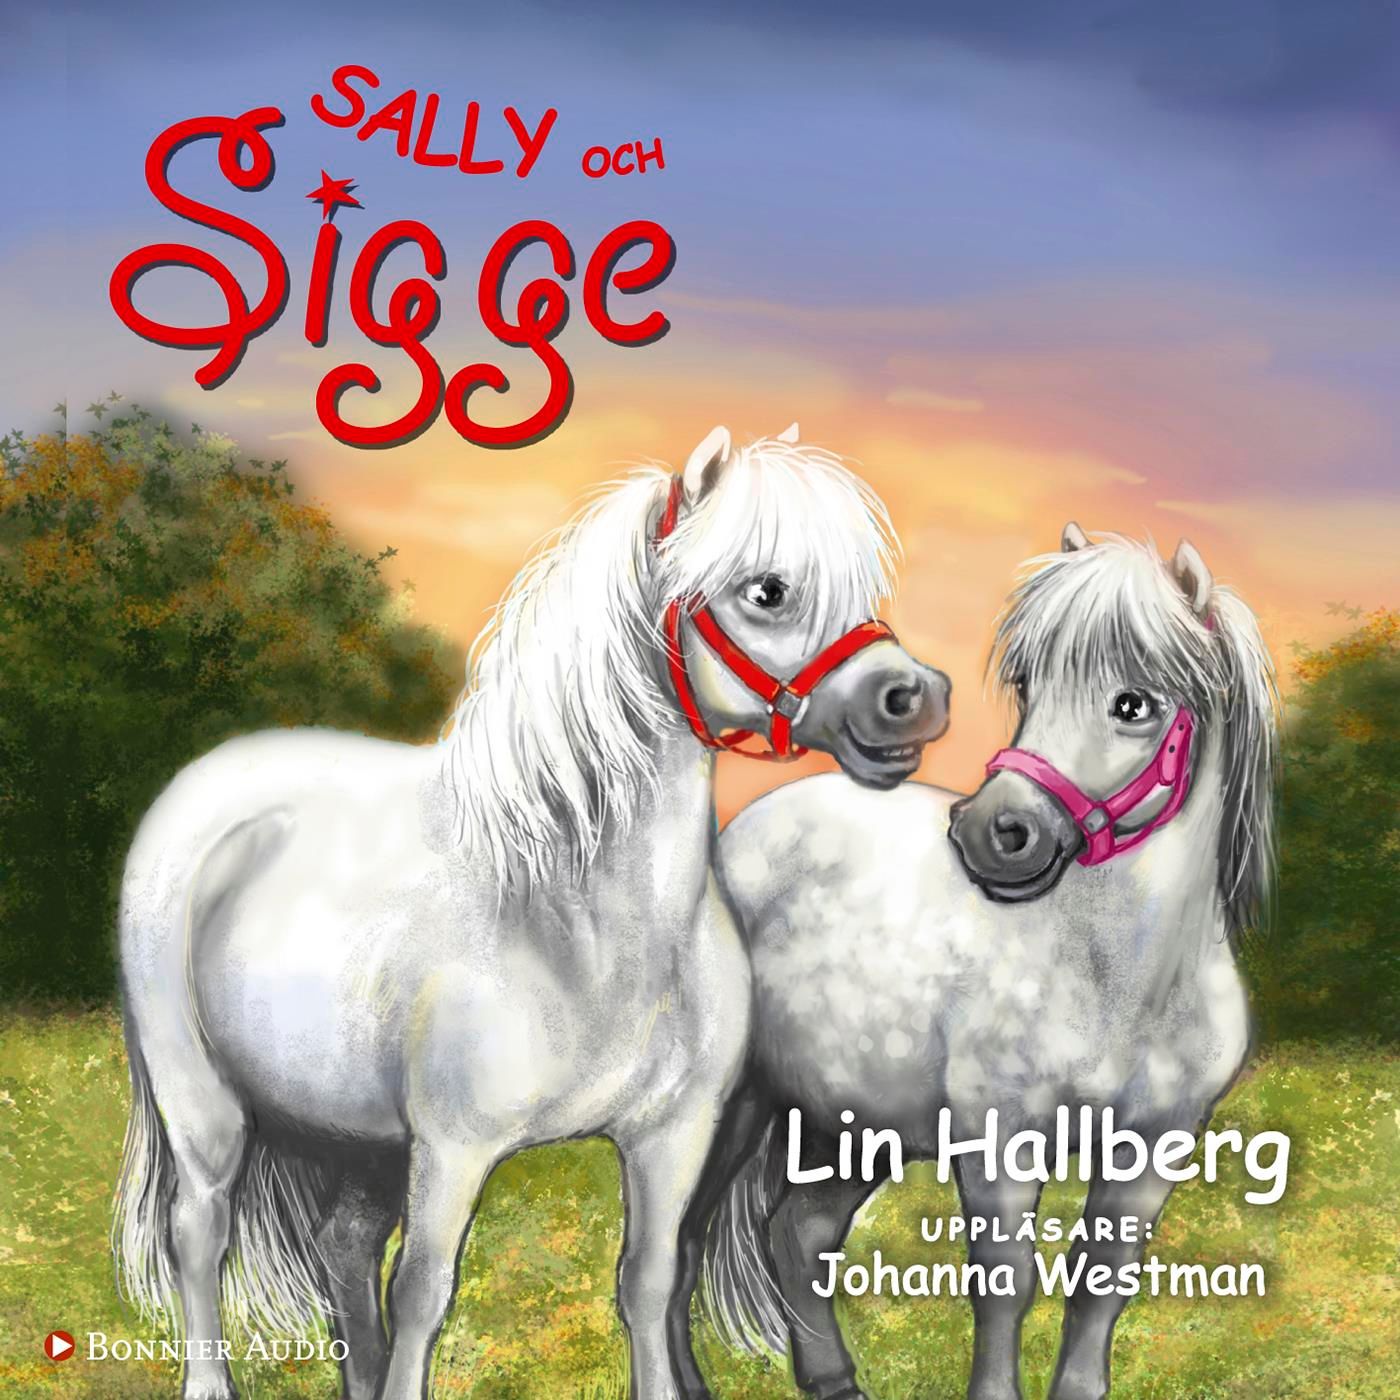 Sally och Sigge, ljudbok av Lin Hallberg